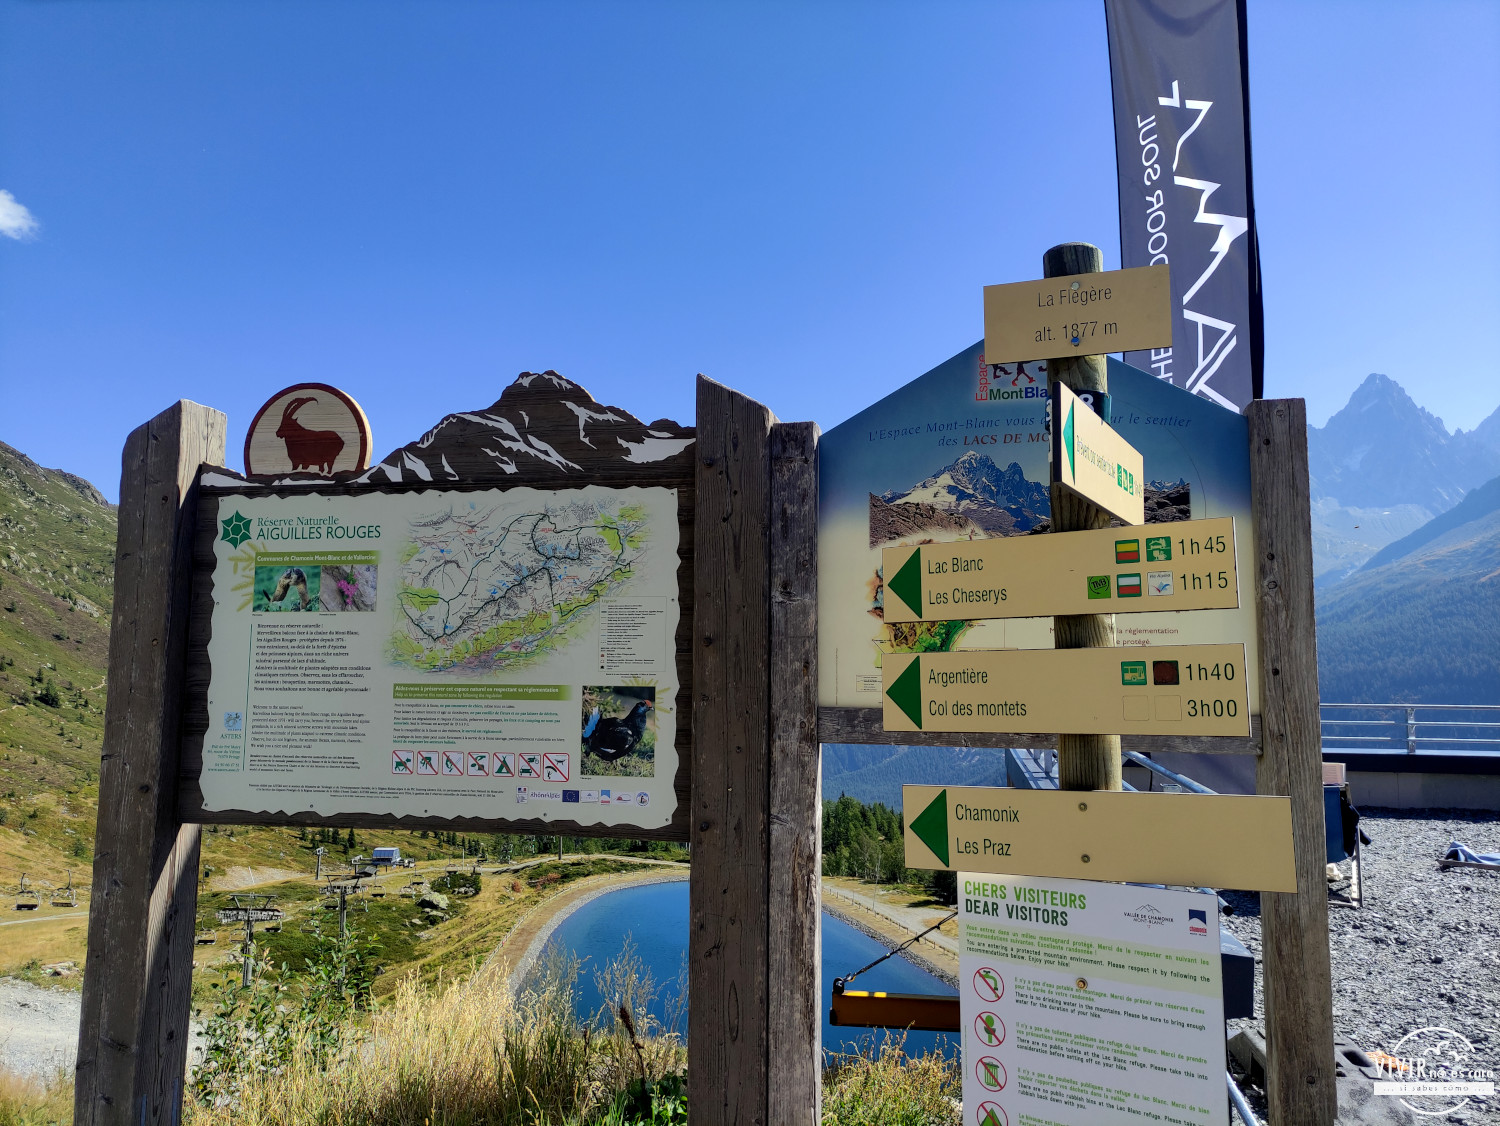 Señalización con distancias rutas desde La Flegere al Lac Blanc y otros